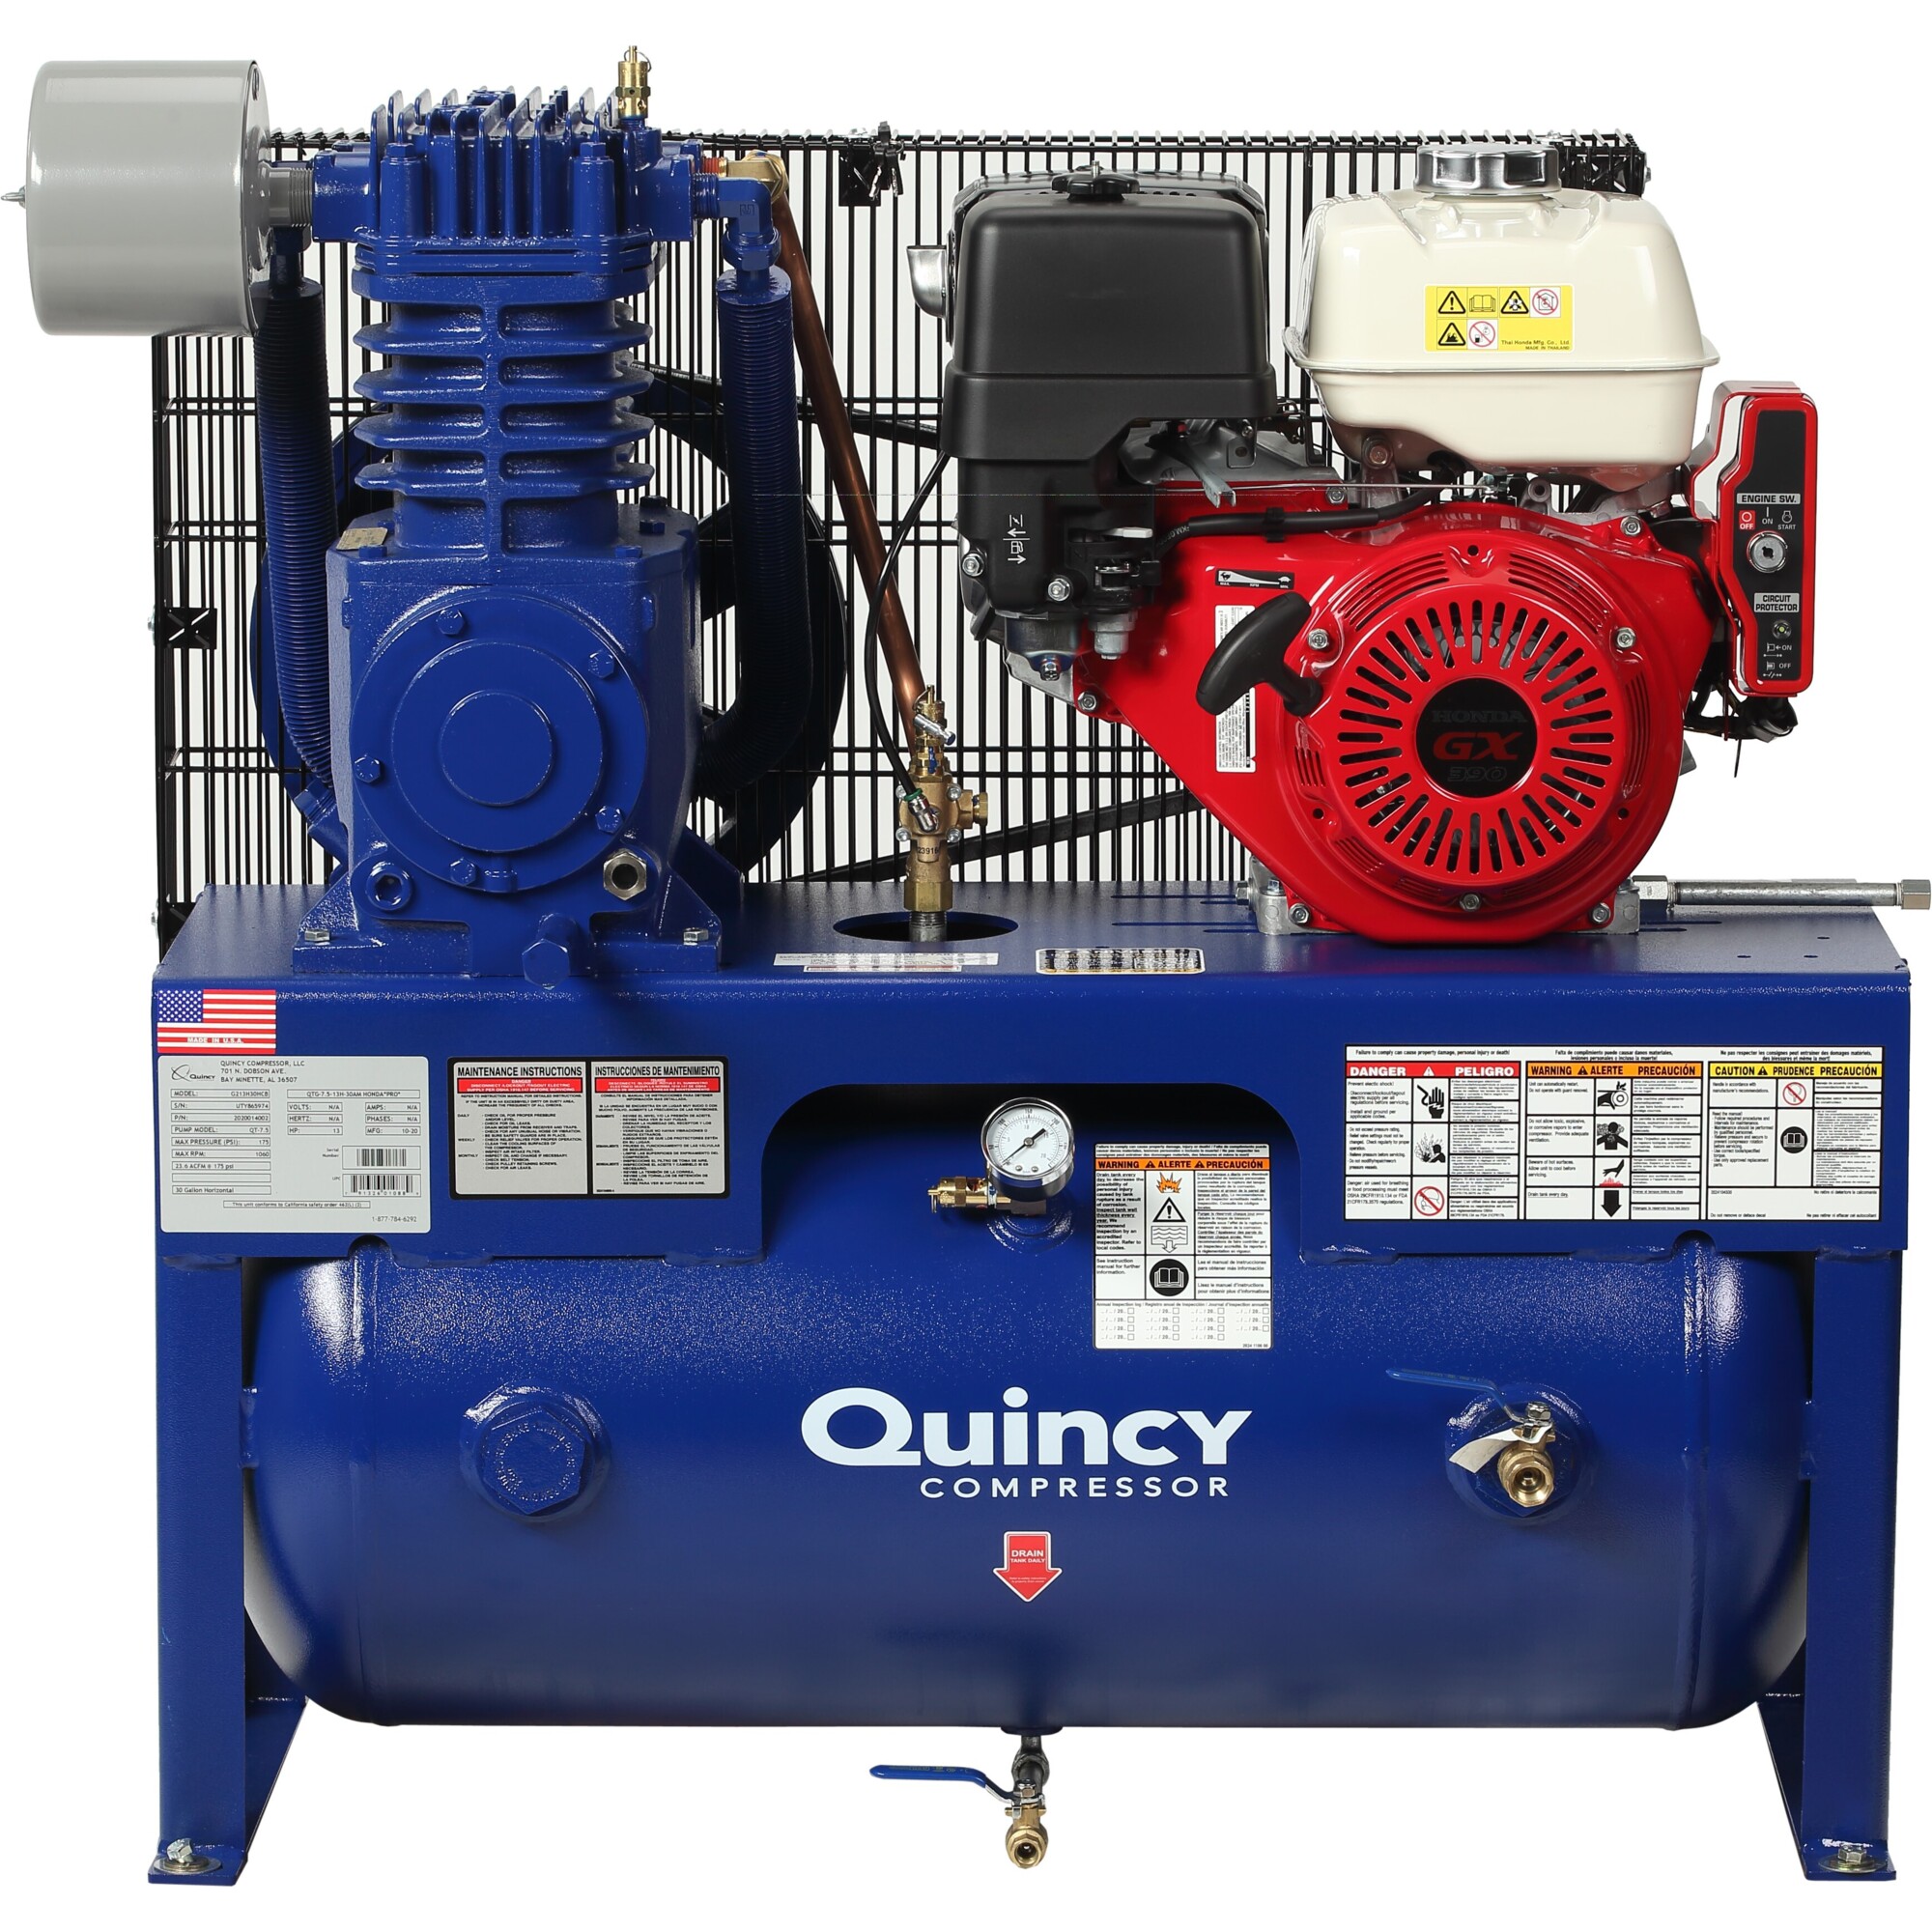 Quincy Compressor 2020040973